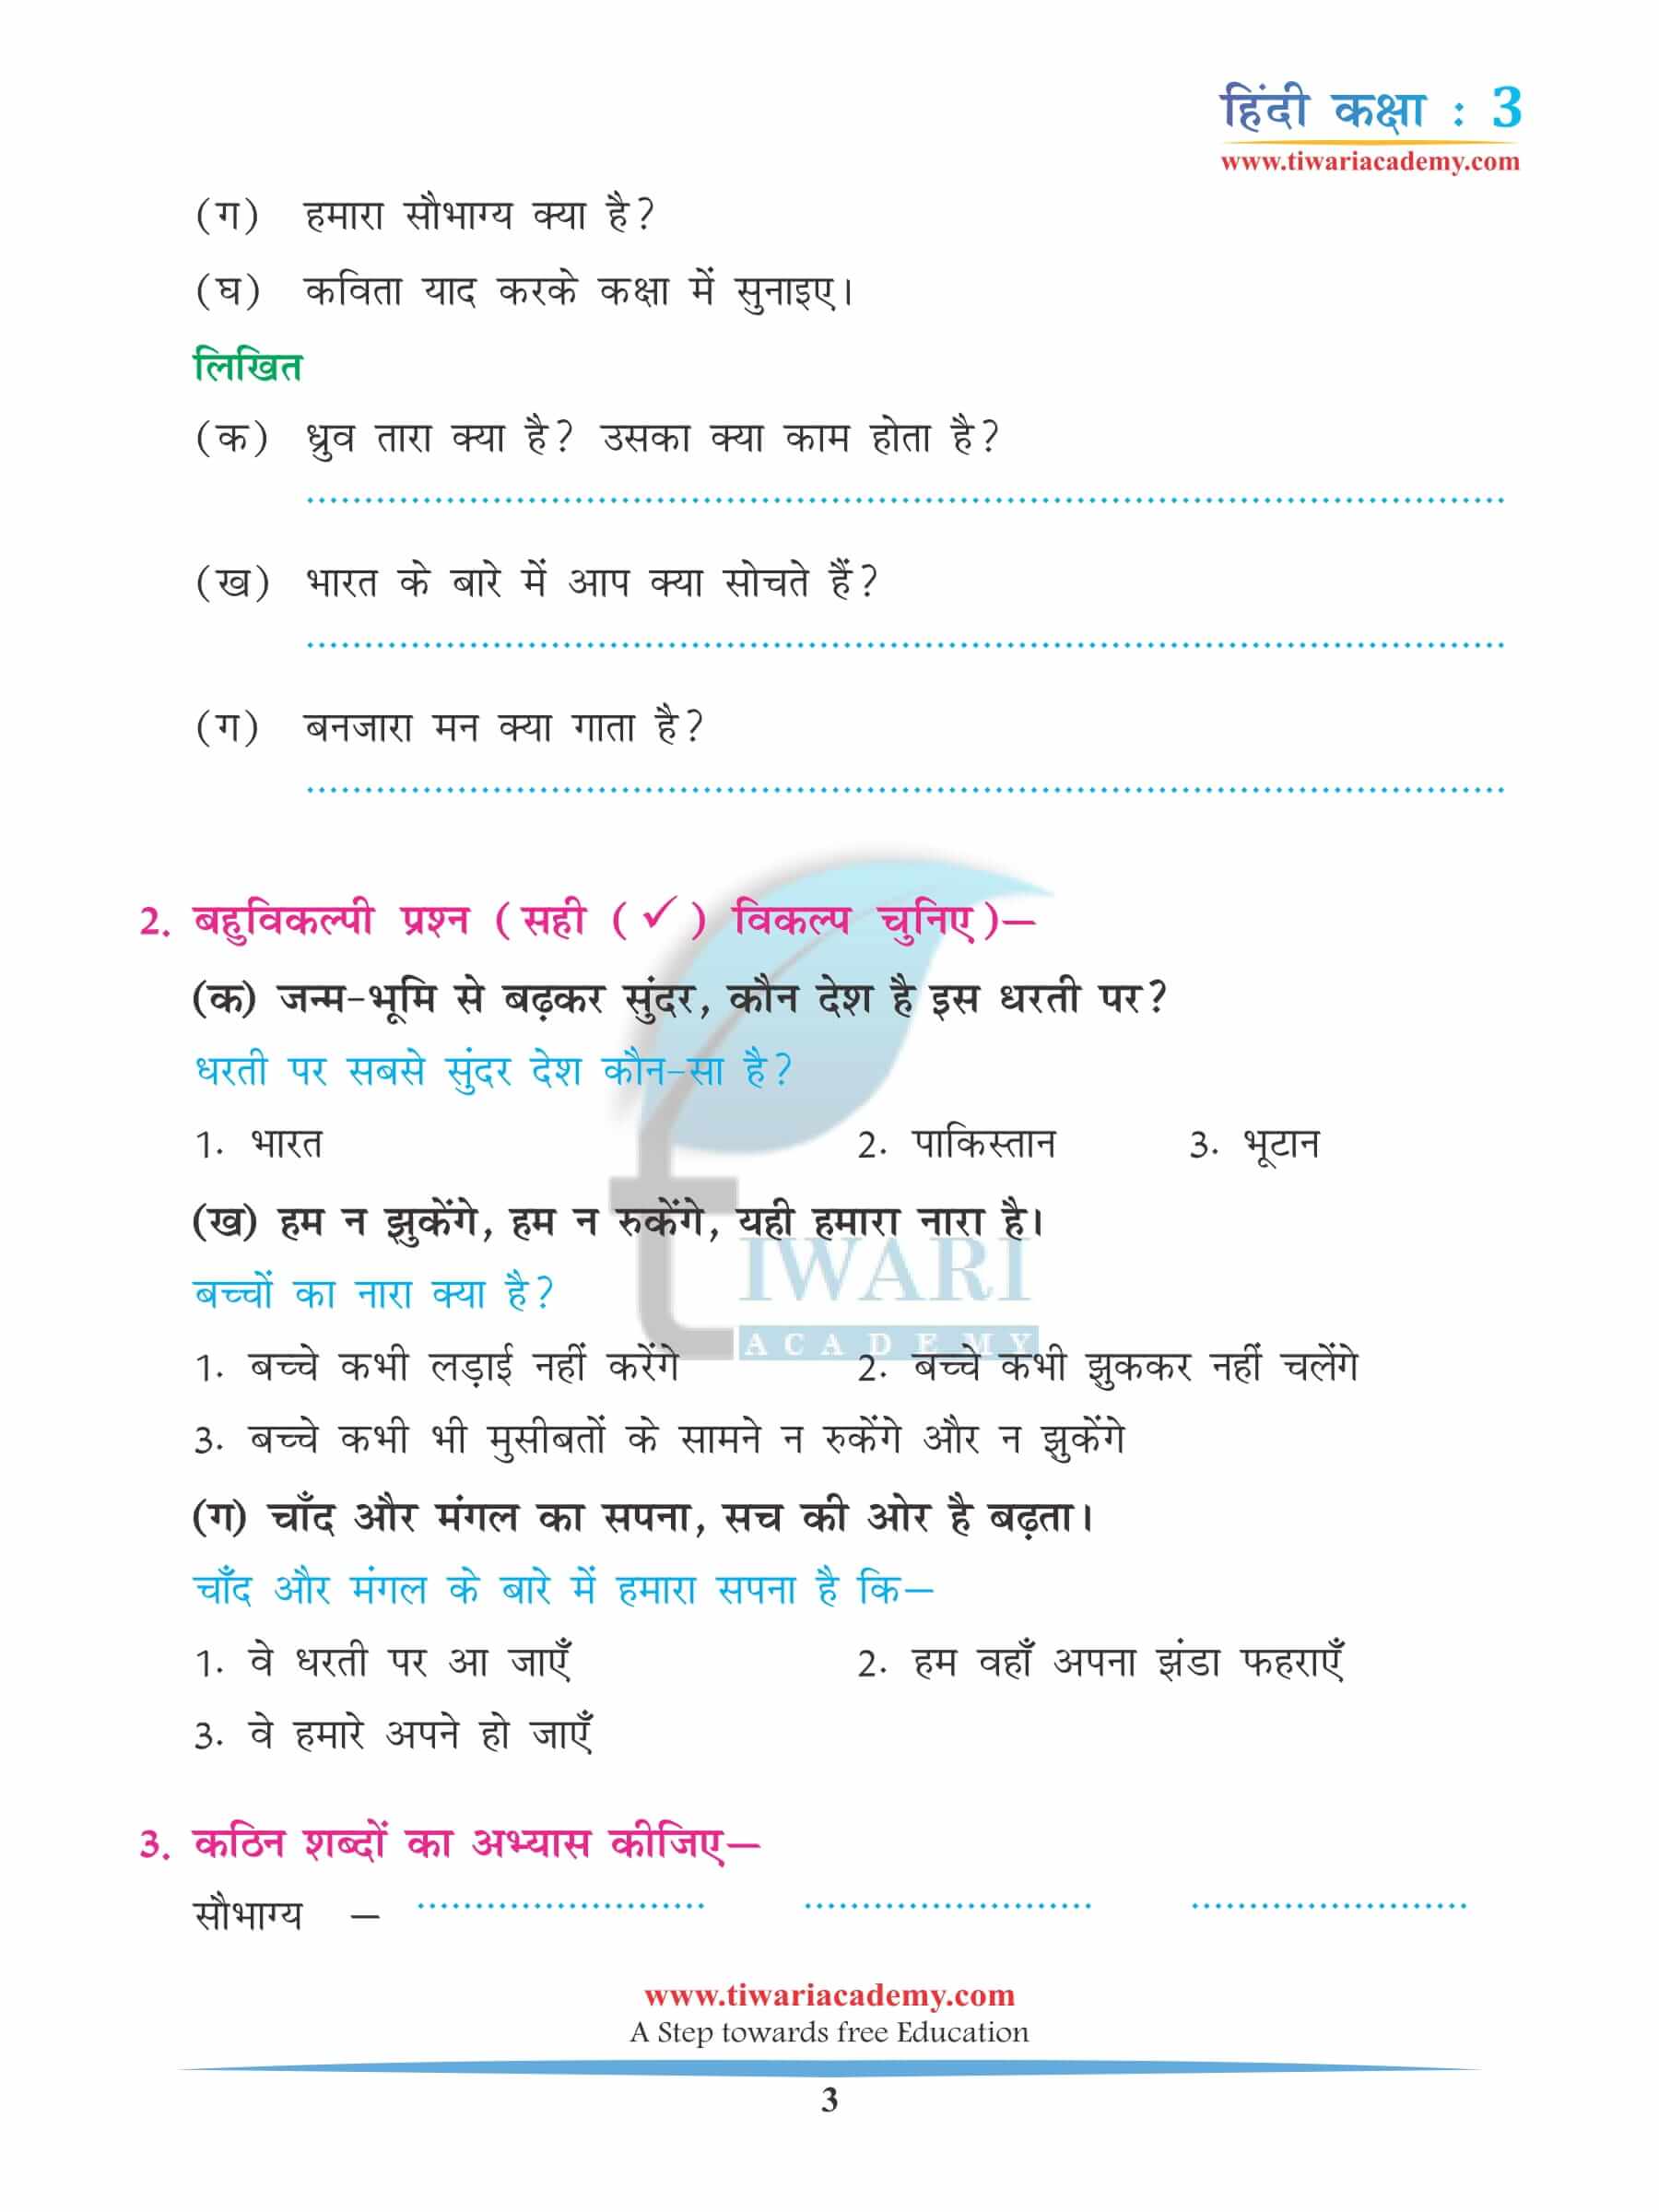 कक्षा 3 हिंदी अध्याय 5 अभ्यास की किताब